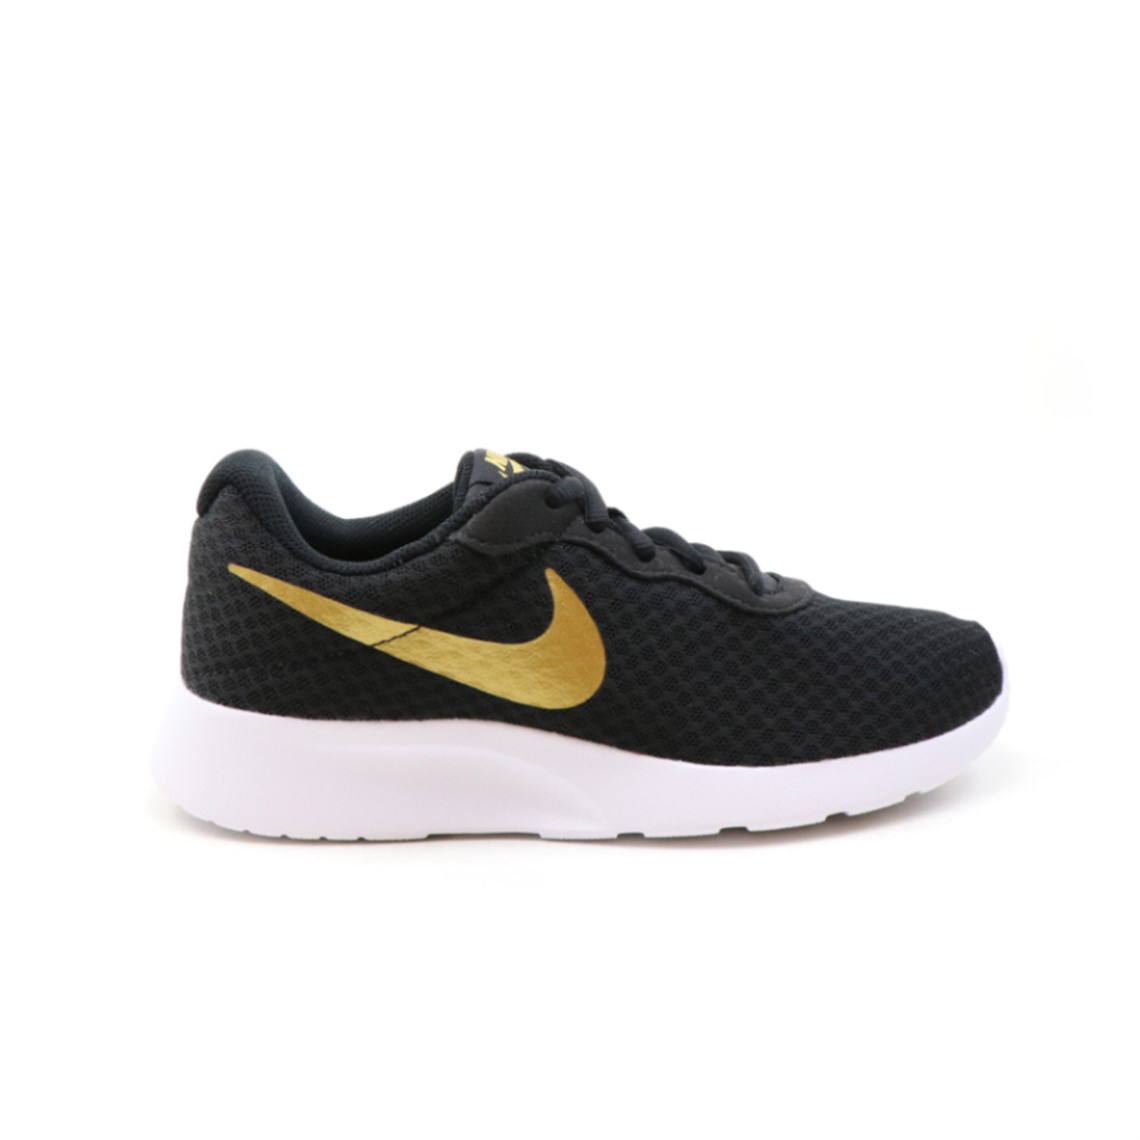 Nike Günlük Koşu Yürüyüş Syh Altın Unisex Spor Ayakkabı 812655-004